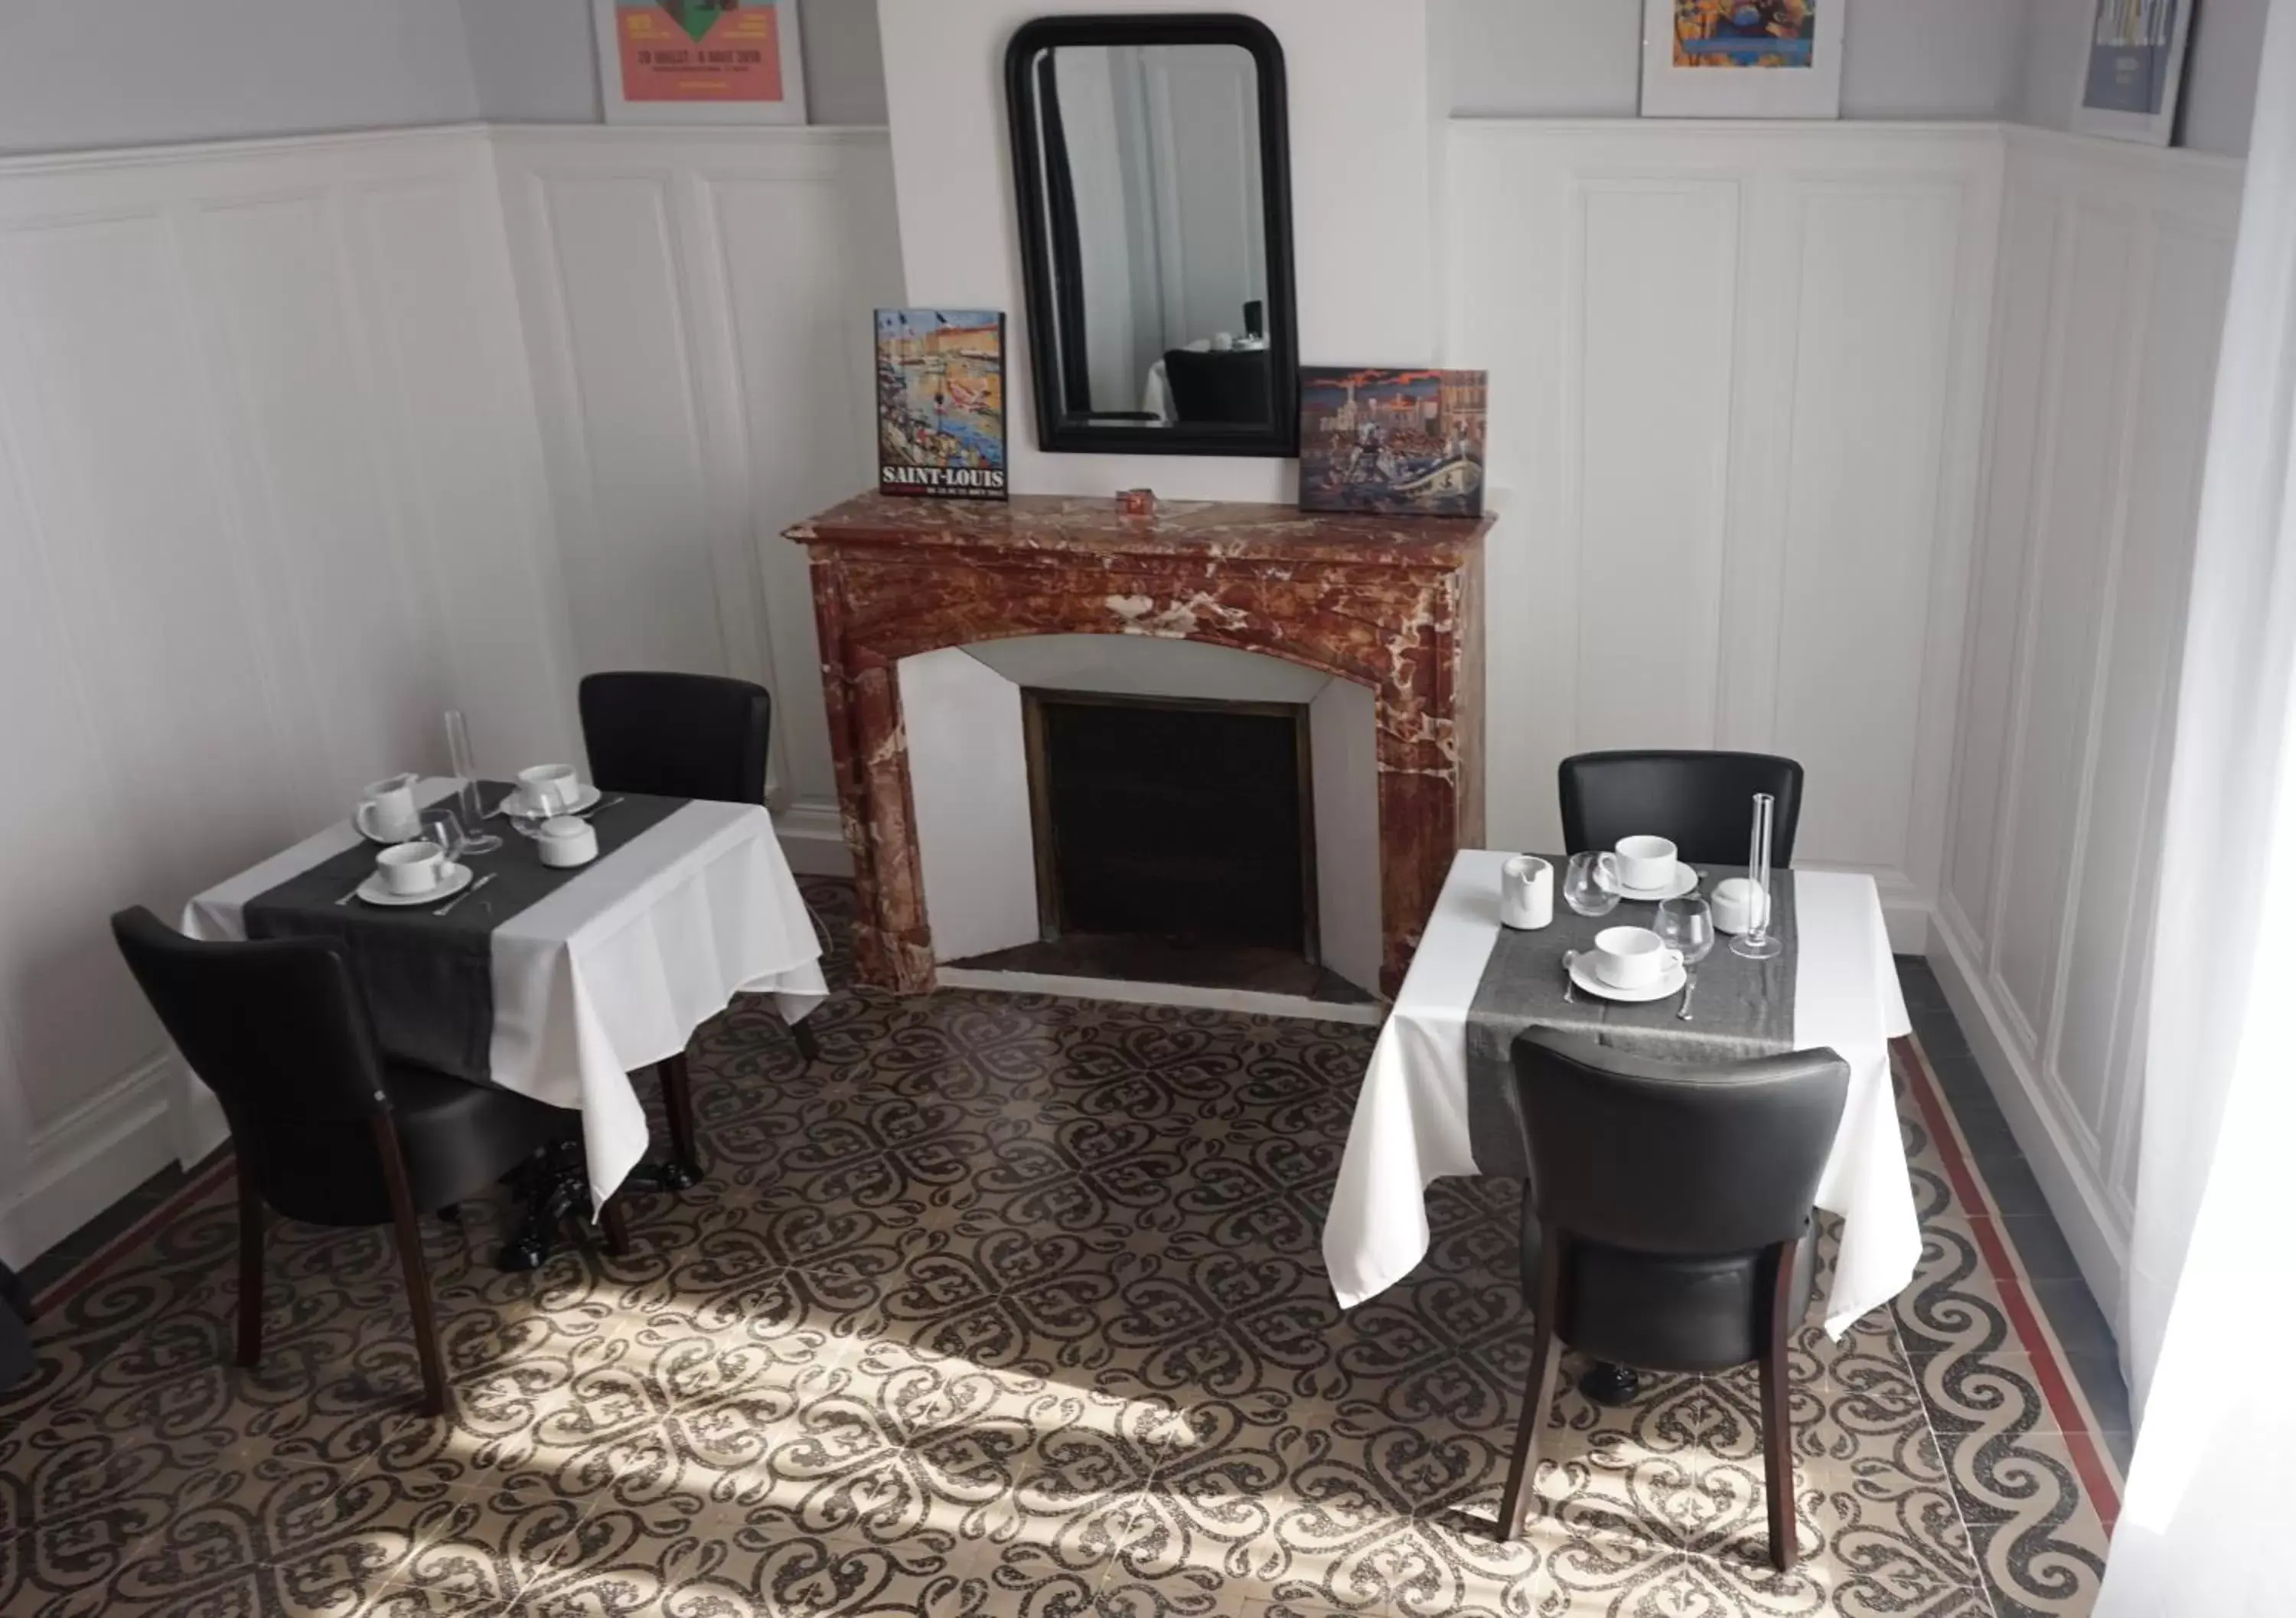 Area and facilities, Restaurant/Places to Eat in La Domitia - Maison d'hôtes, spa, sauna & massages